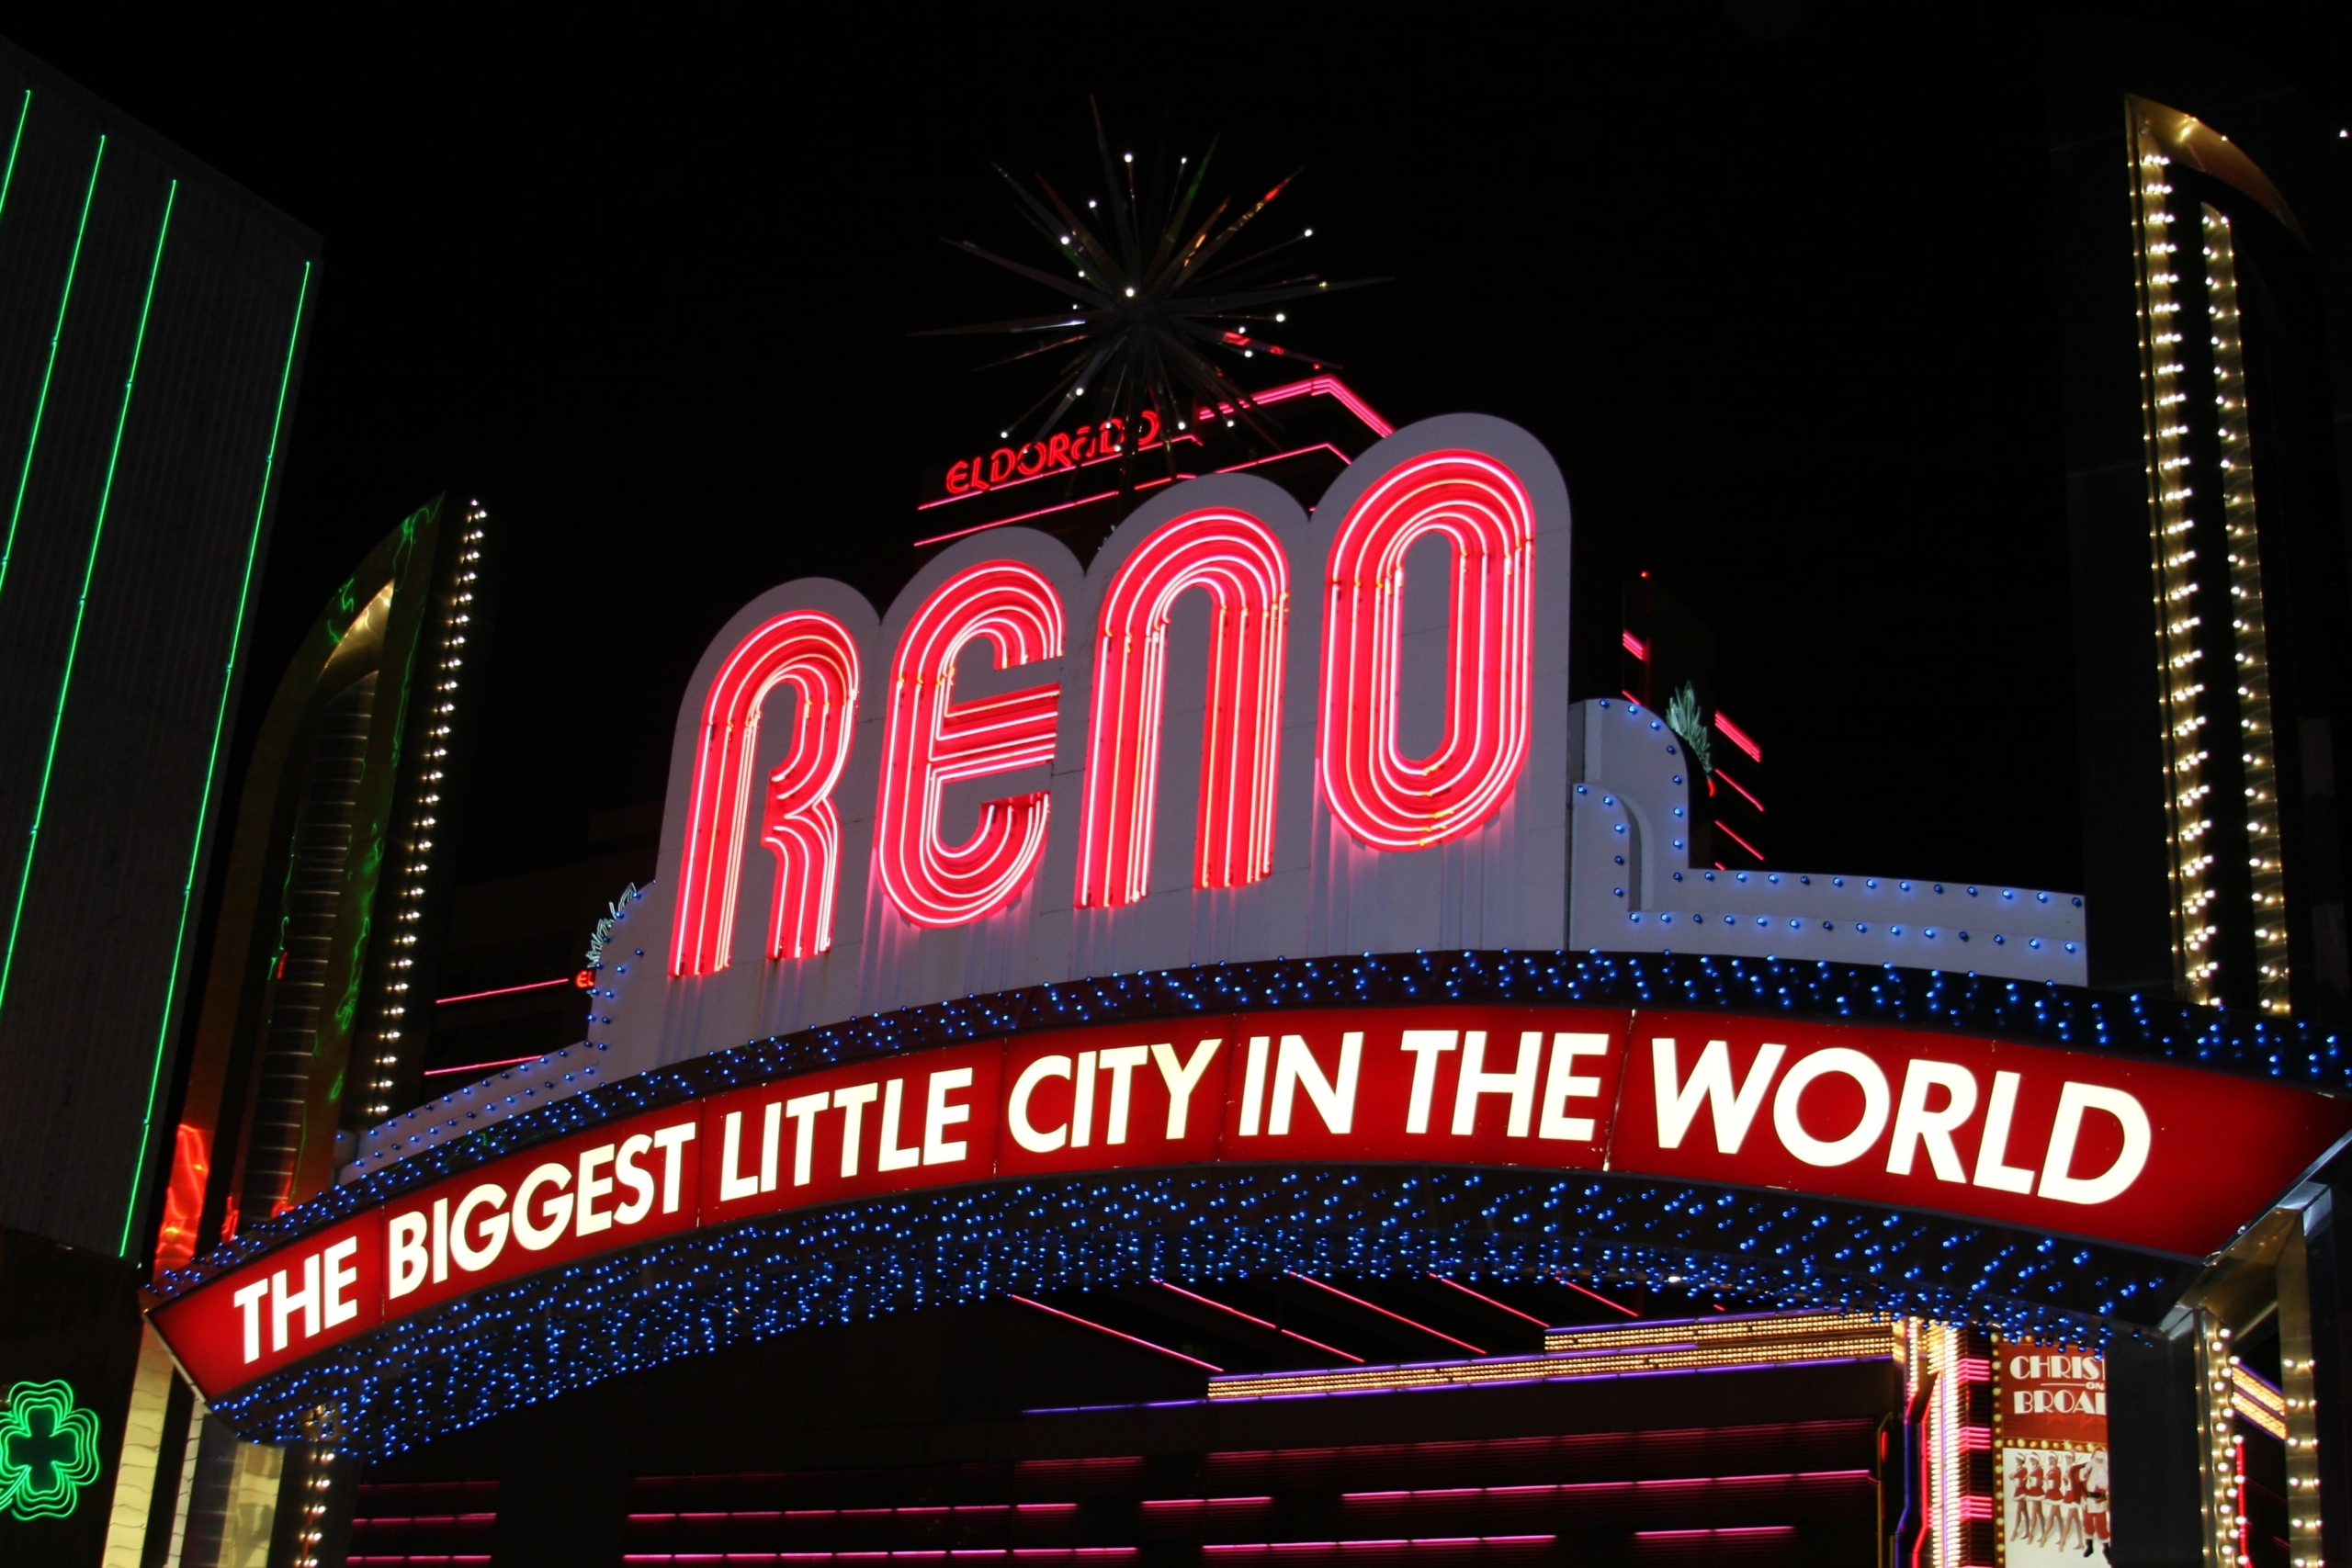 City of Reno arch